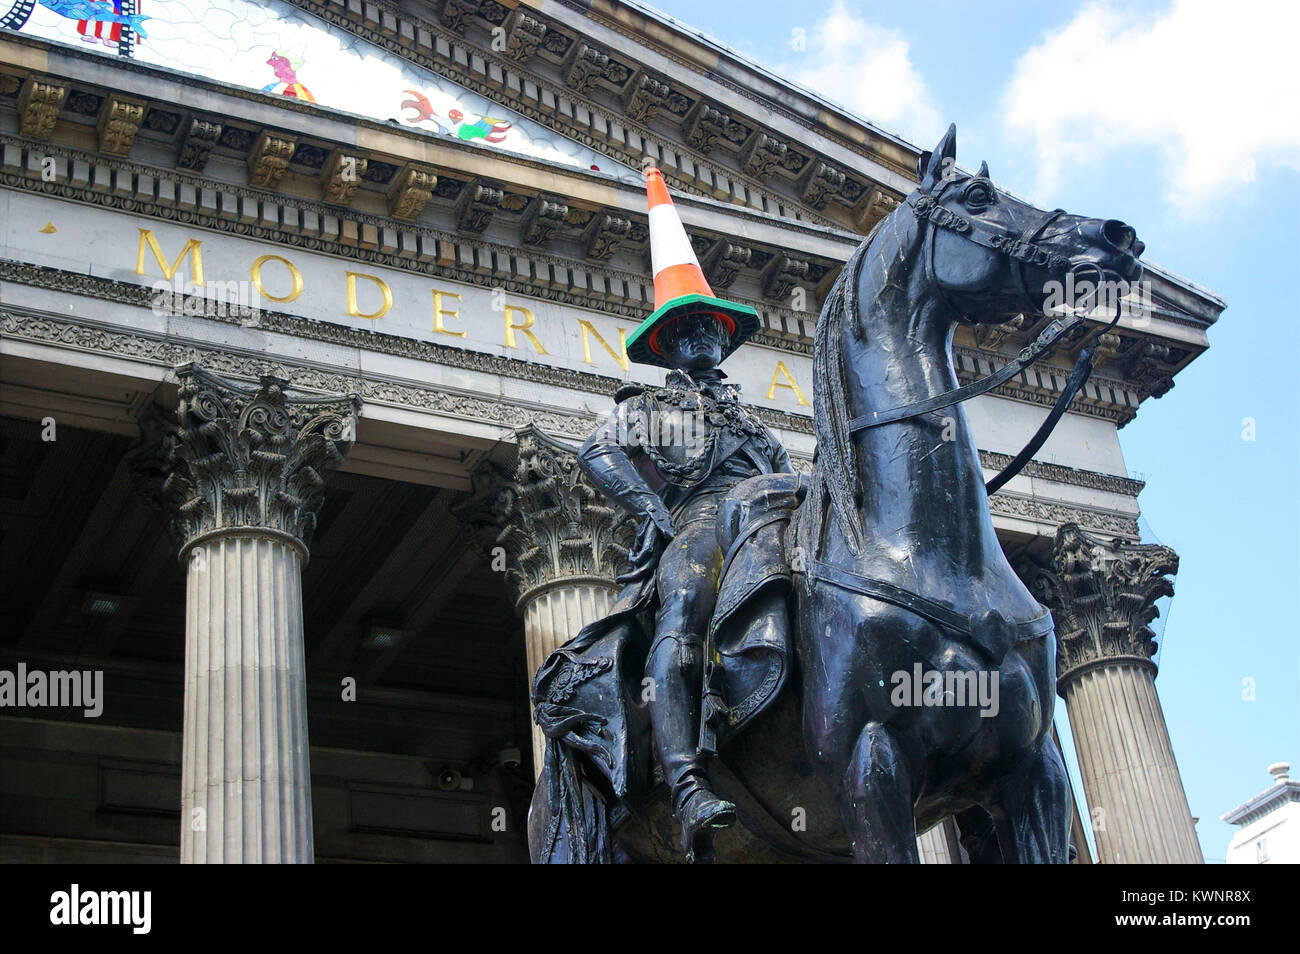 Famosa statua equestre del Duca di Wellington con un cono stradale sulla sua testa, di fronte alla Galleria di Arte Moderna di Glasgow, Scozia. Foto Stock